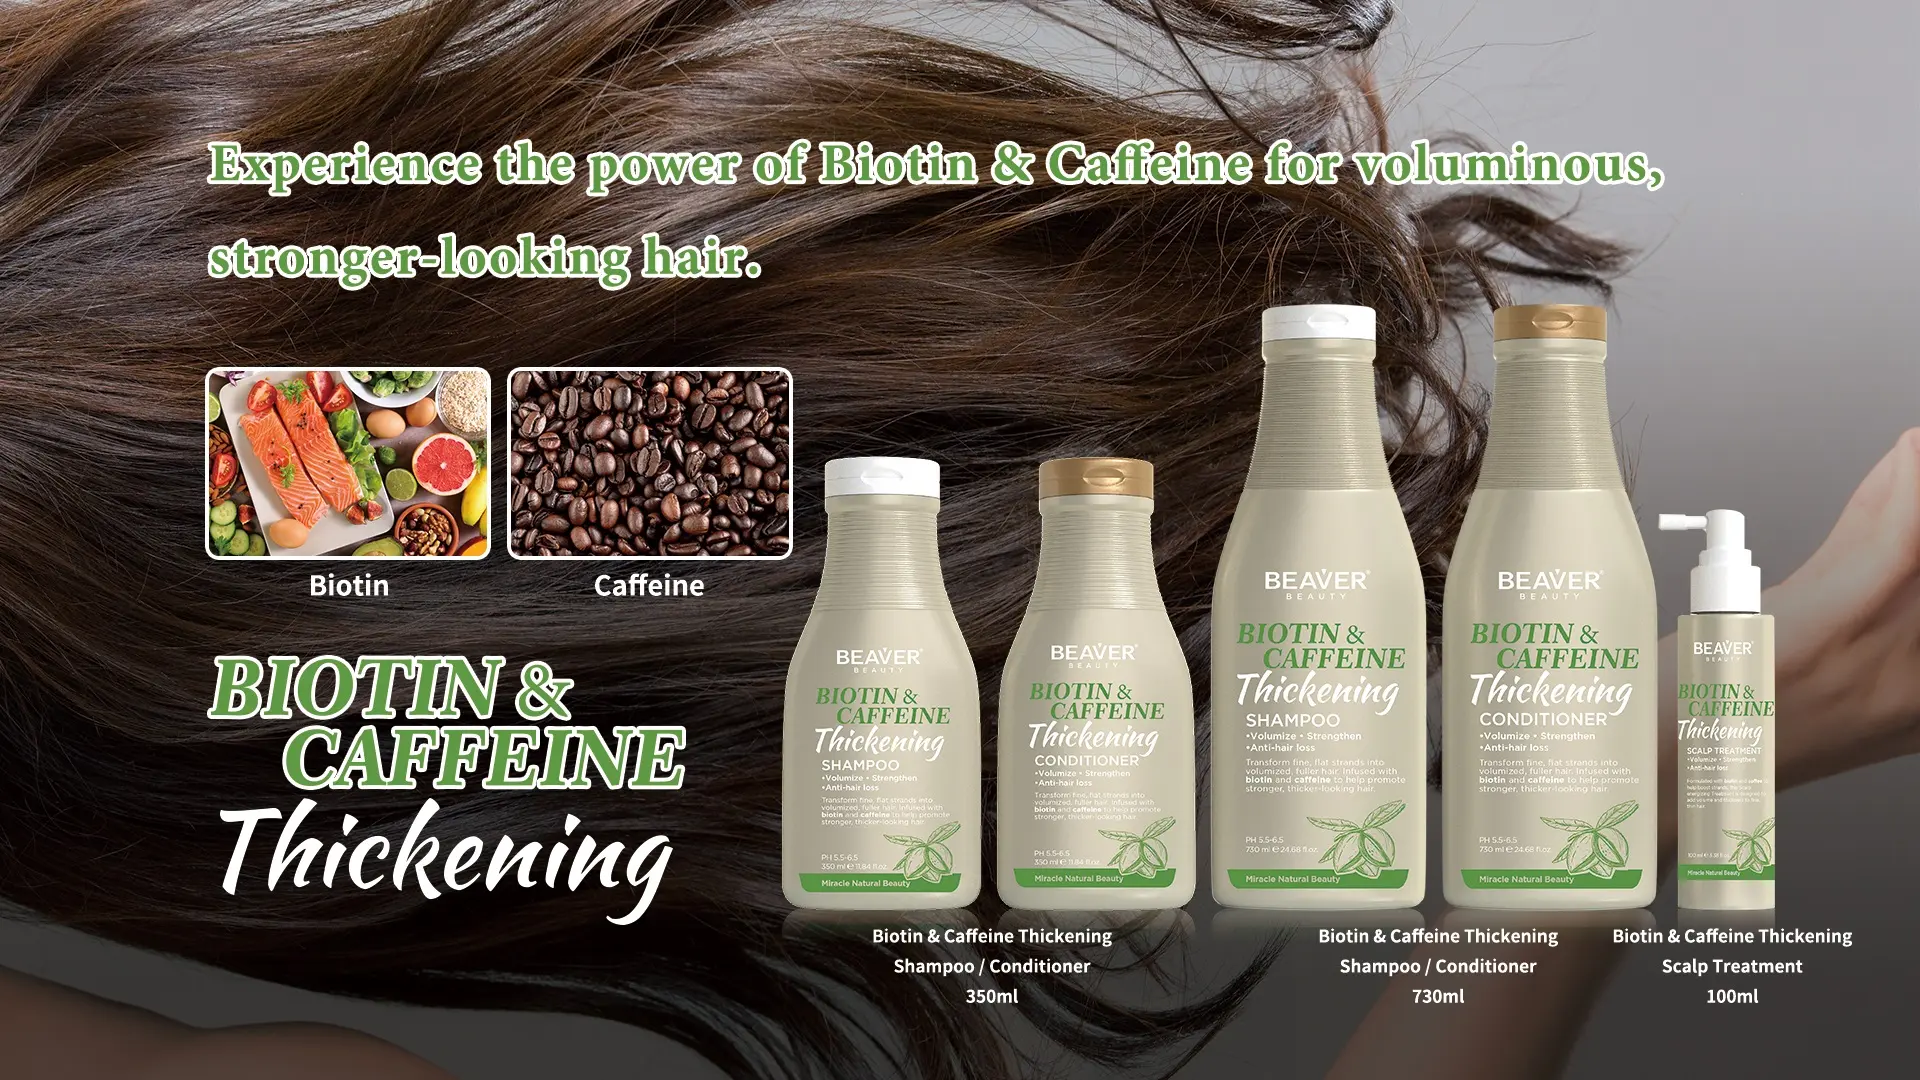 Beaver Biotina Cafeína Espessamento Shampoo e Condicionador Conjunto para Fortalecer Volume Nourish Hair Anti Hair Loss Crescimento Shampoo